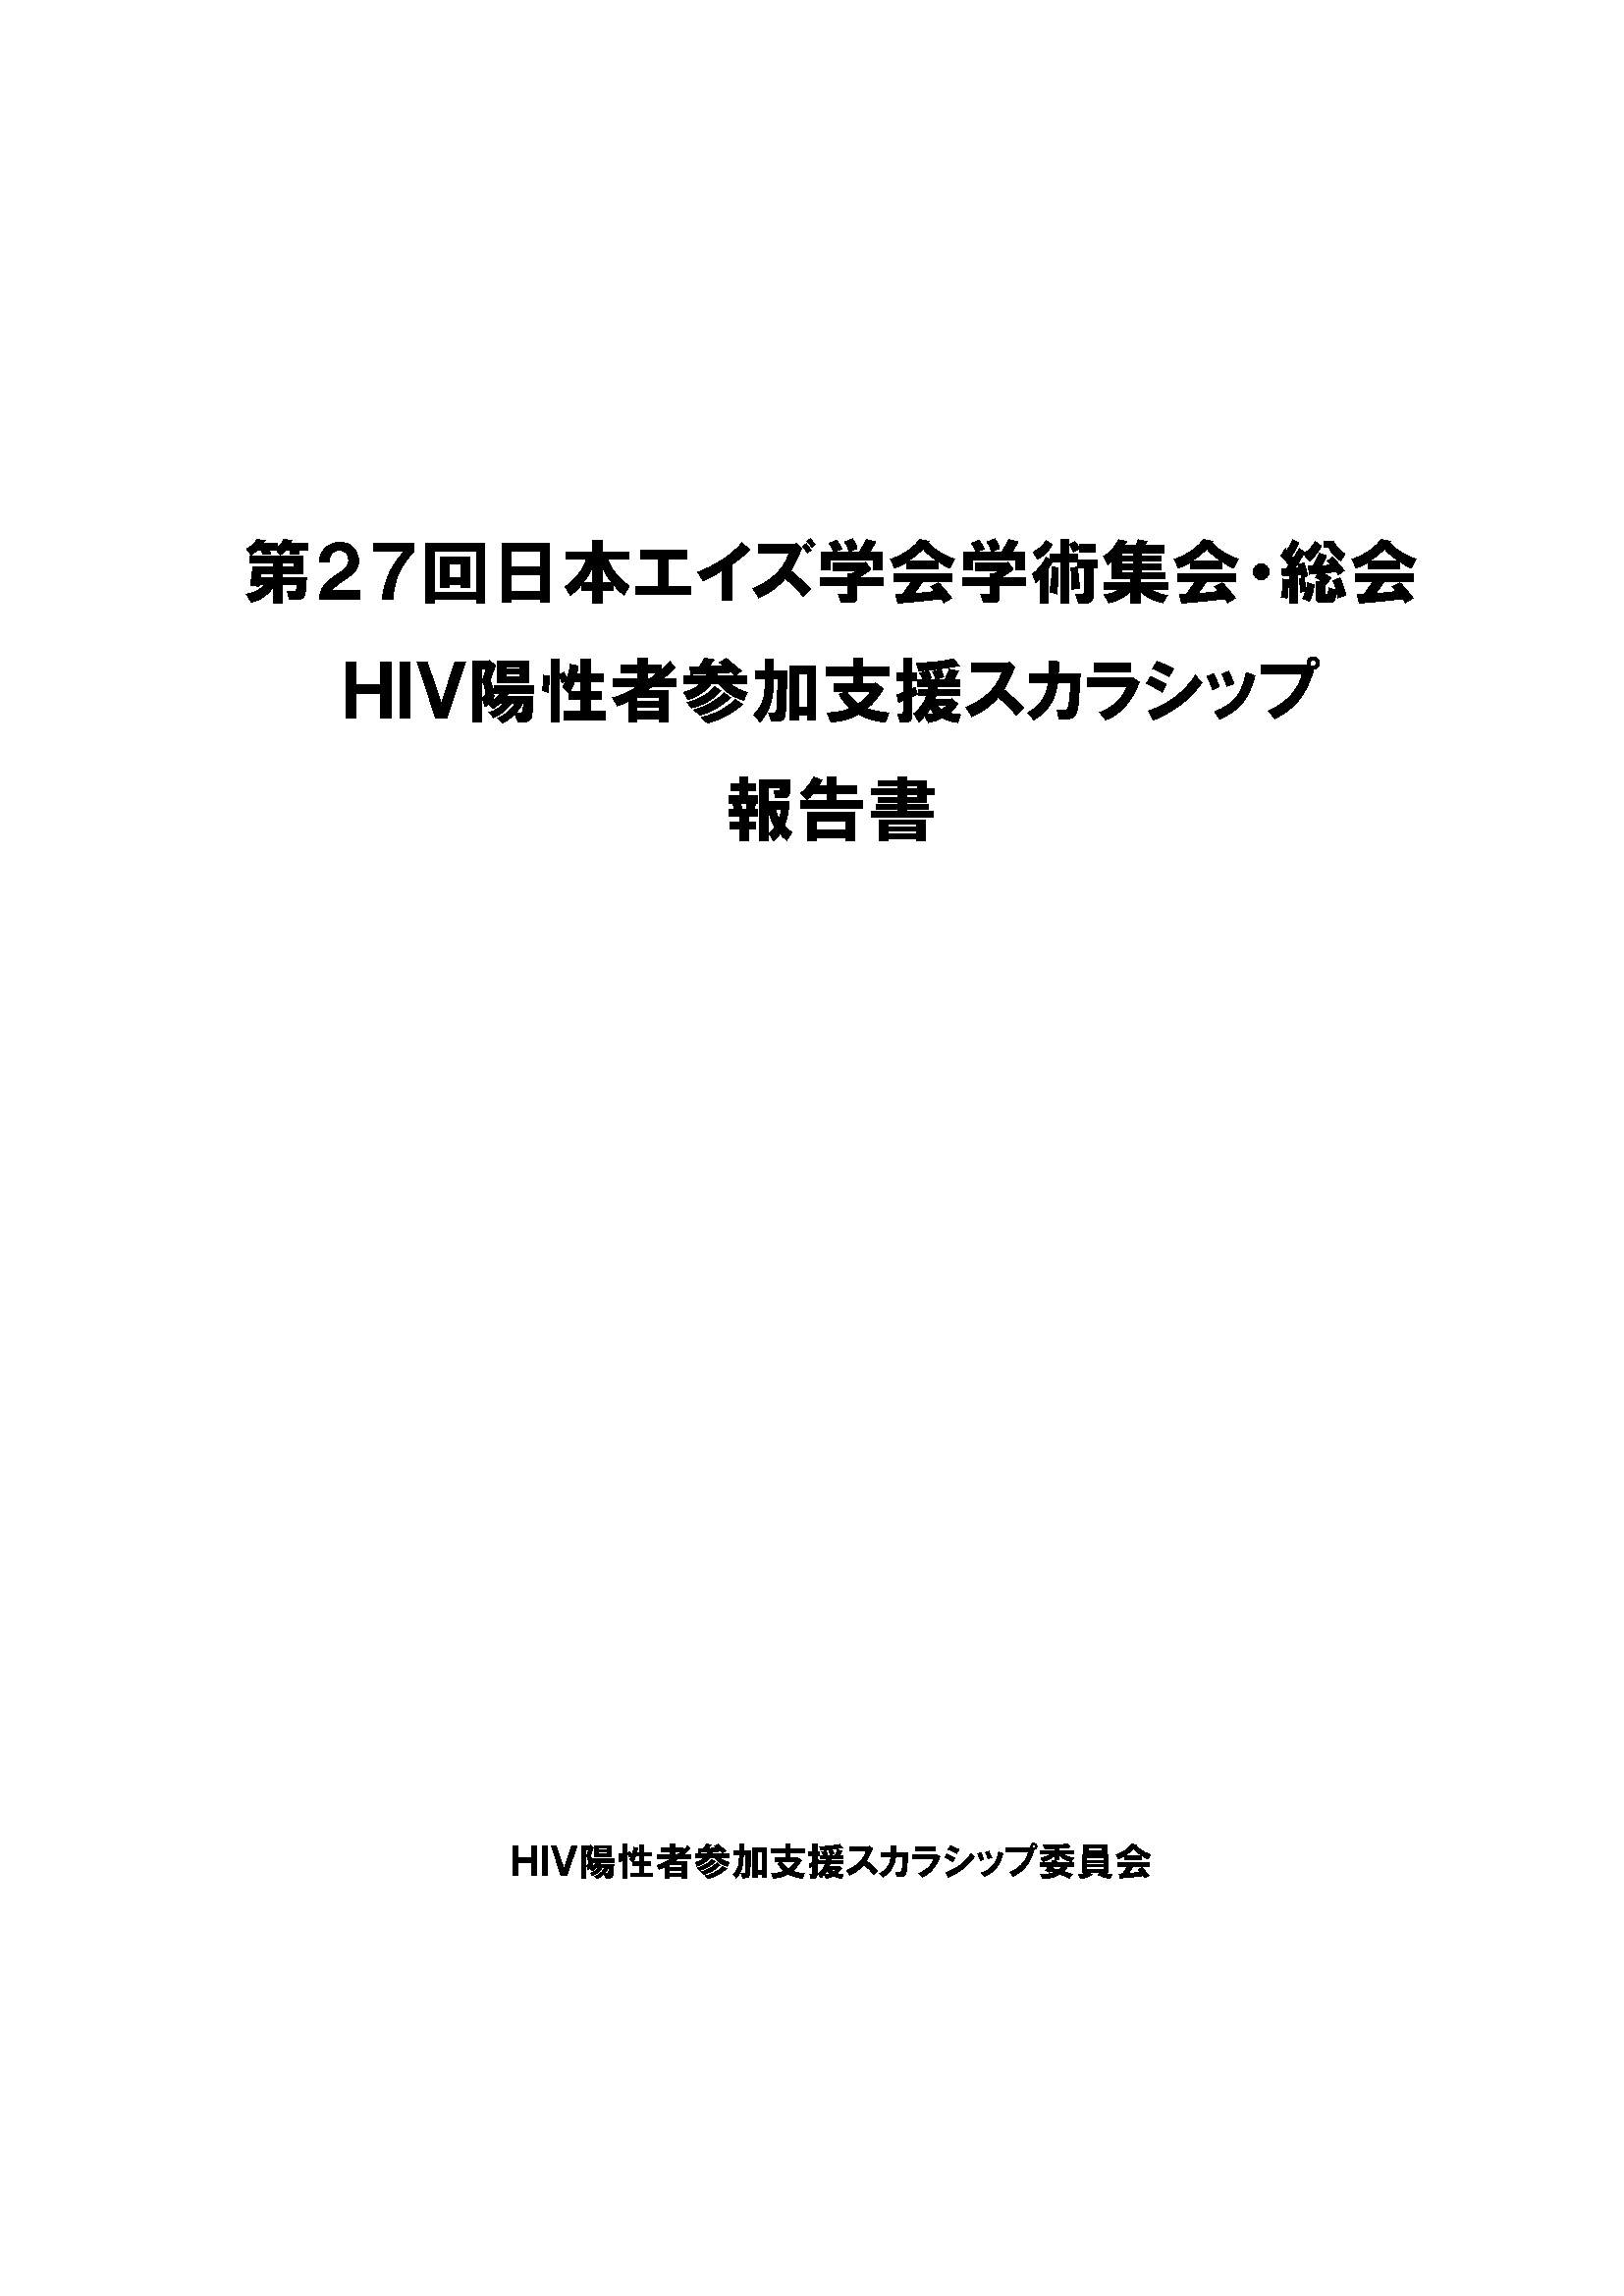 第27回日本エイズ学会総会・学術集会 HIV陽性者参加支援スカラシップ 報告書